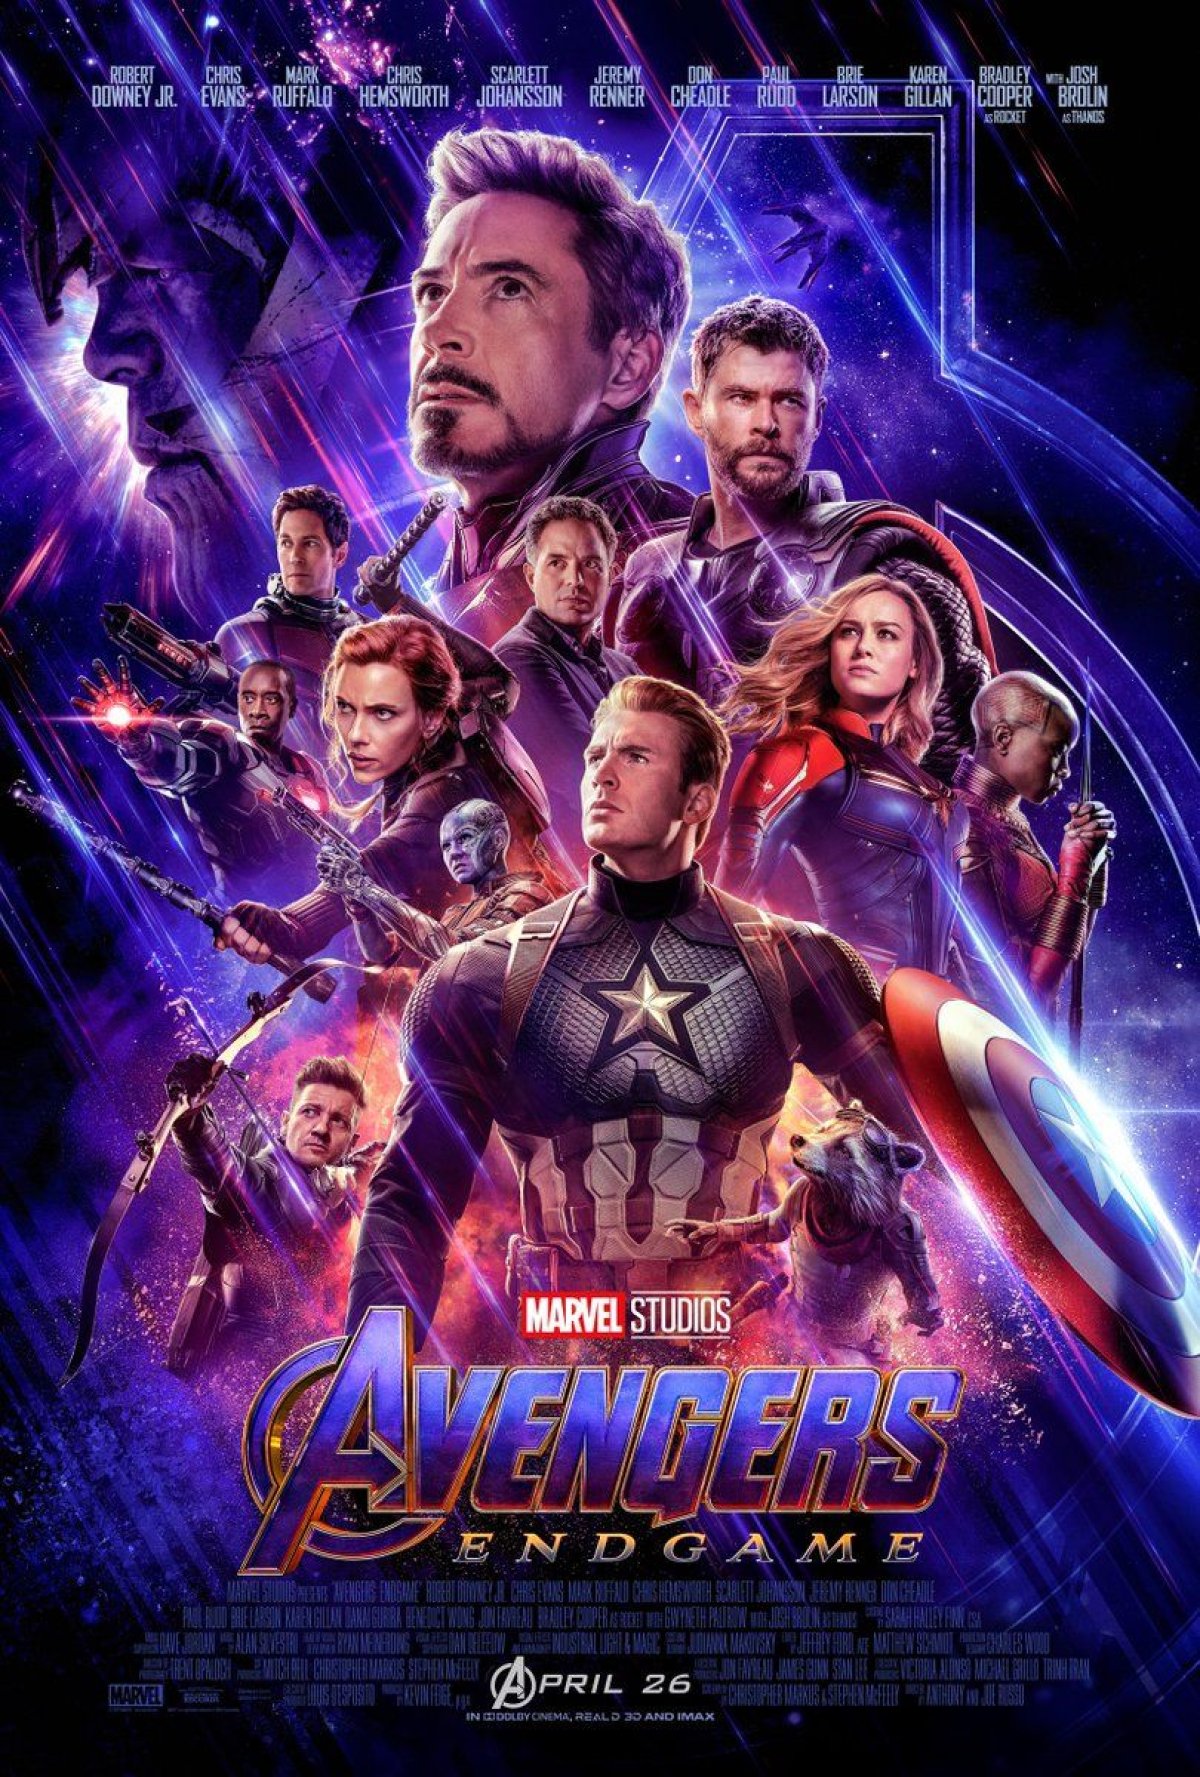 avengers endgame trailer poster 2 captain marvel